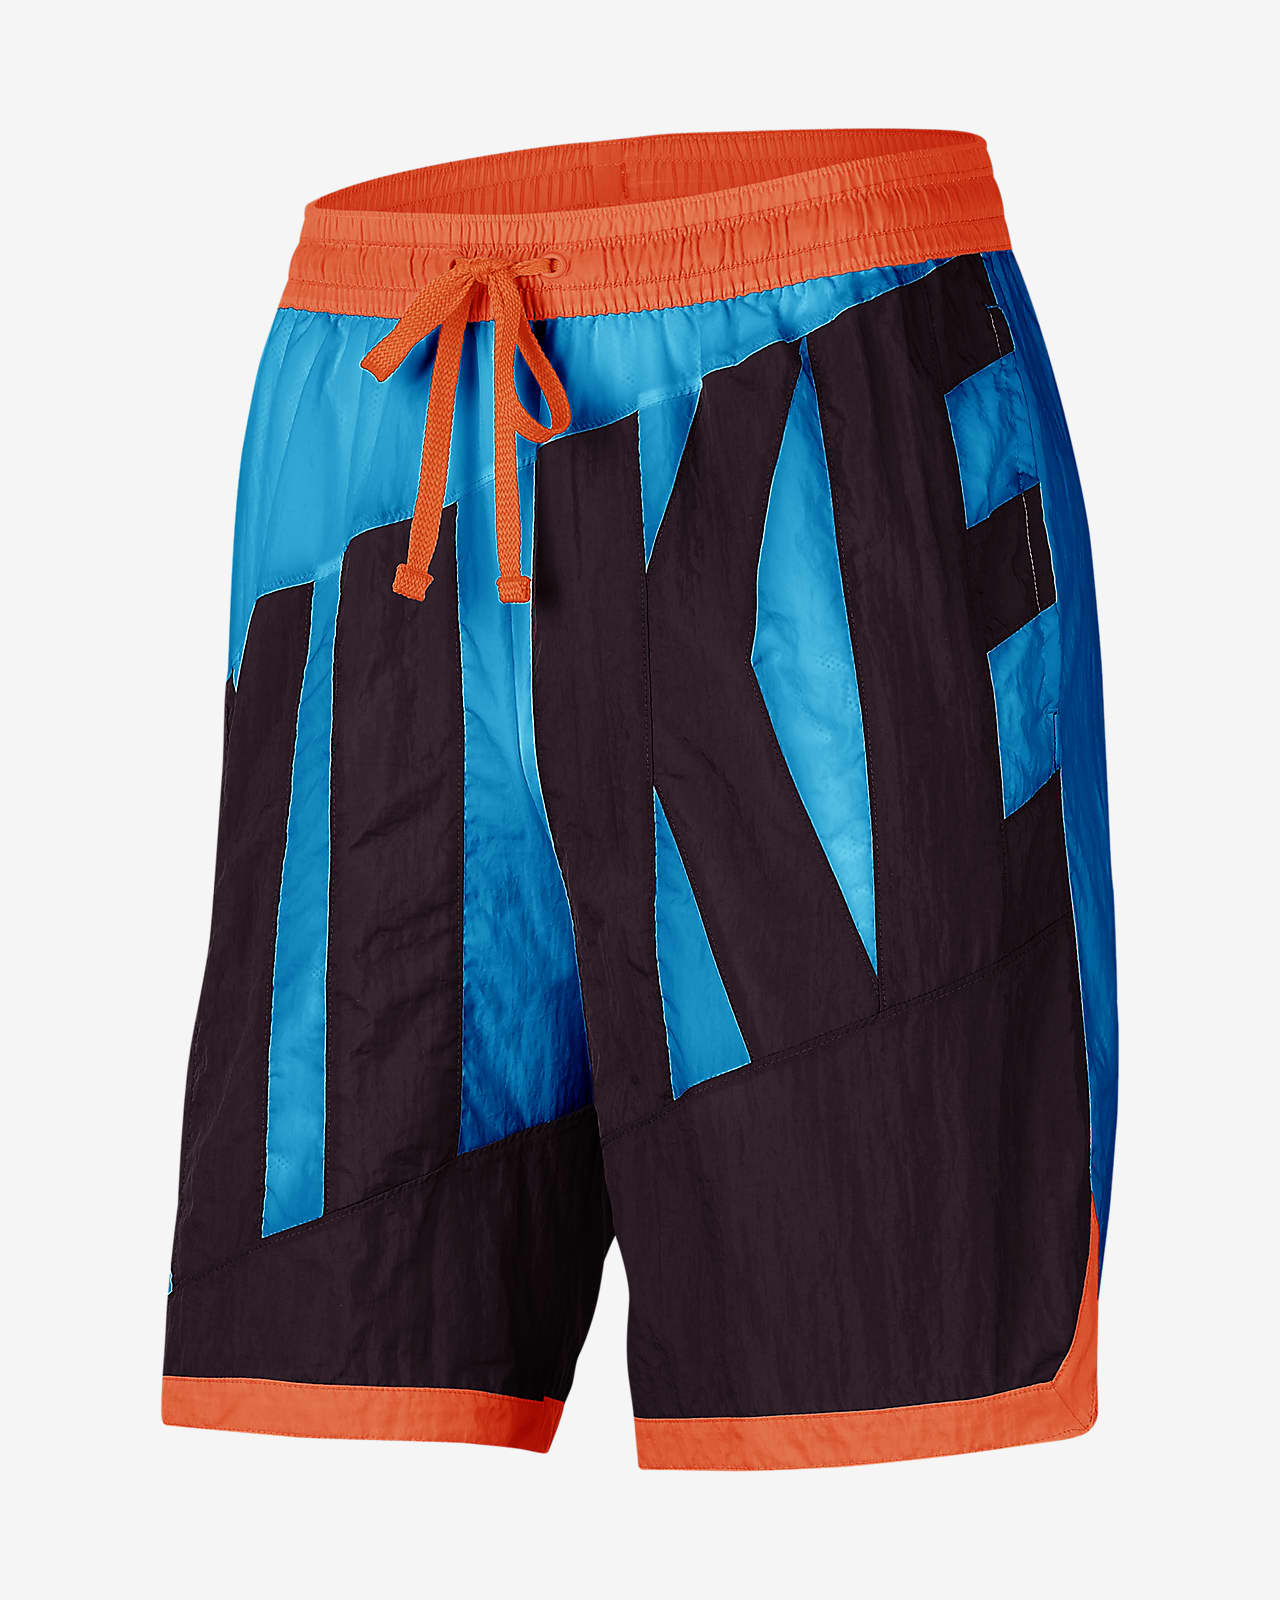 colorful nike shorts